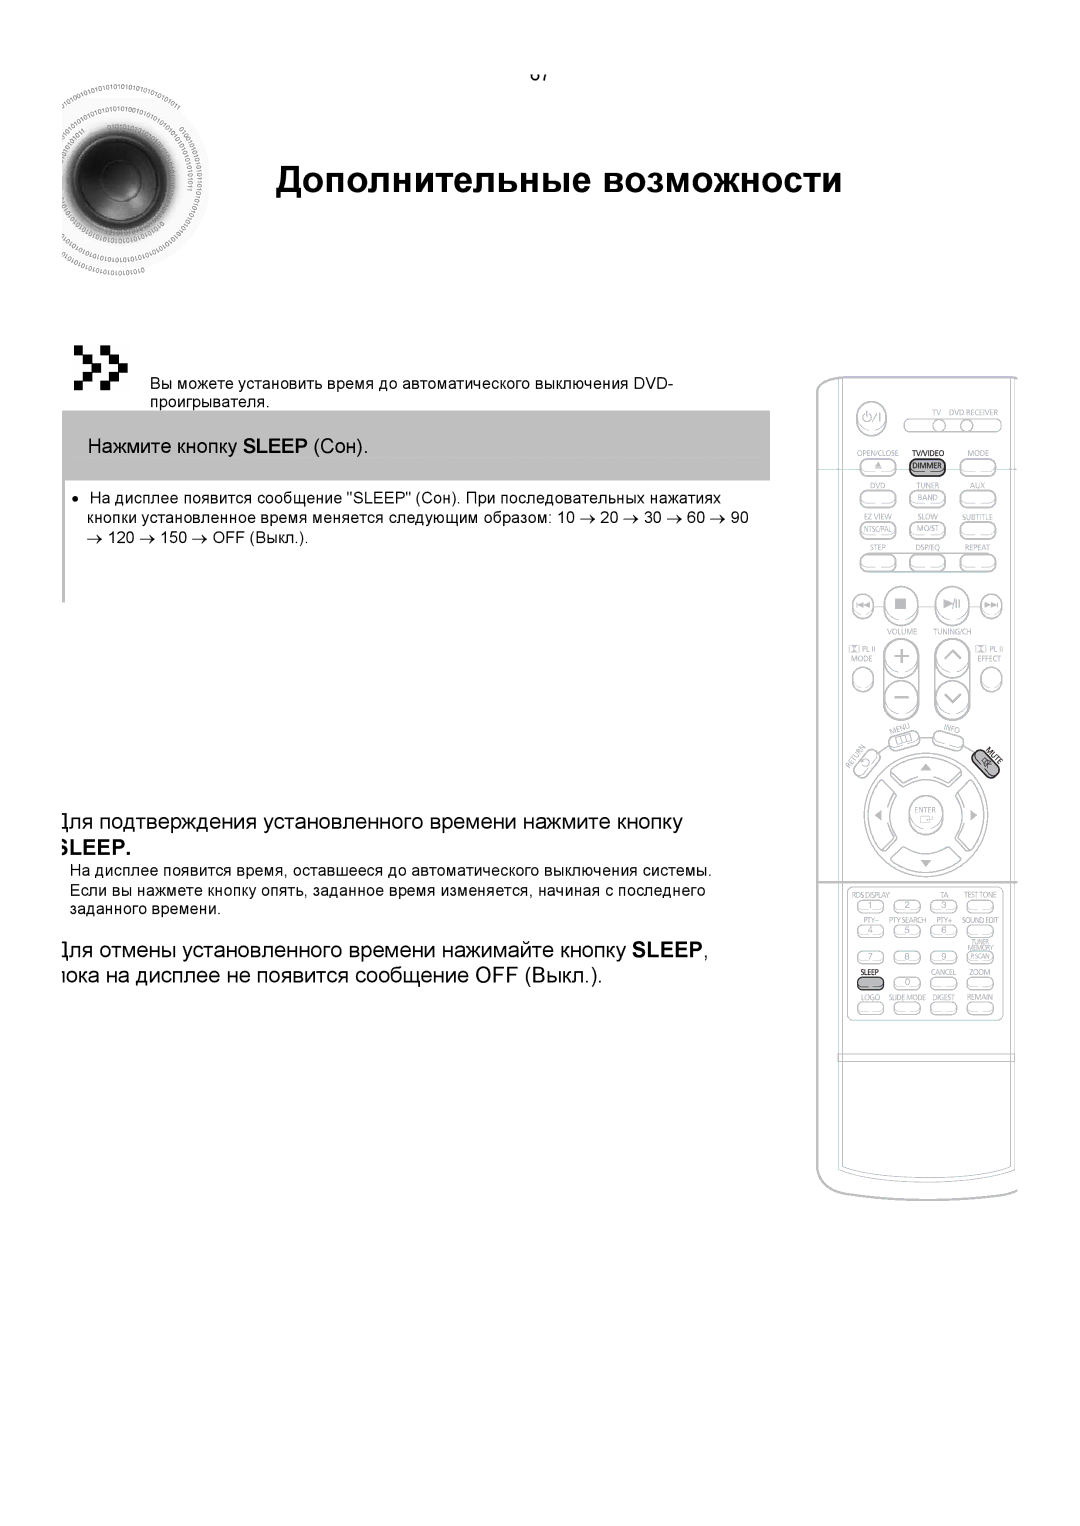 Samsung HTDS400RH/XFO, HT-DS420RH/XFO Дополнительные возможности, Для подтверждения установленного времени нажмите кнопку 